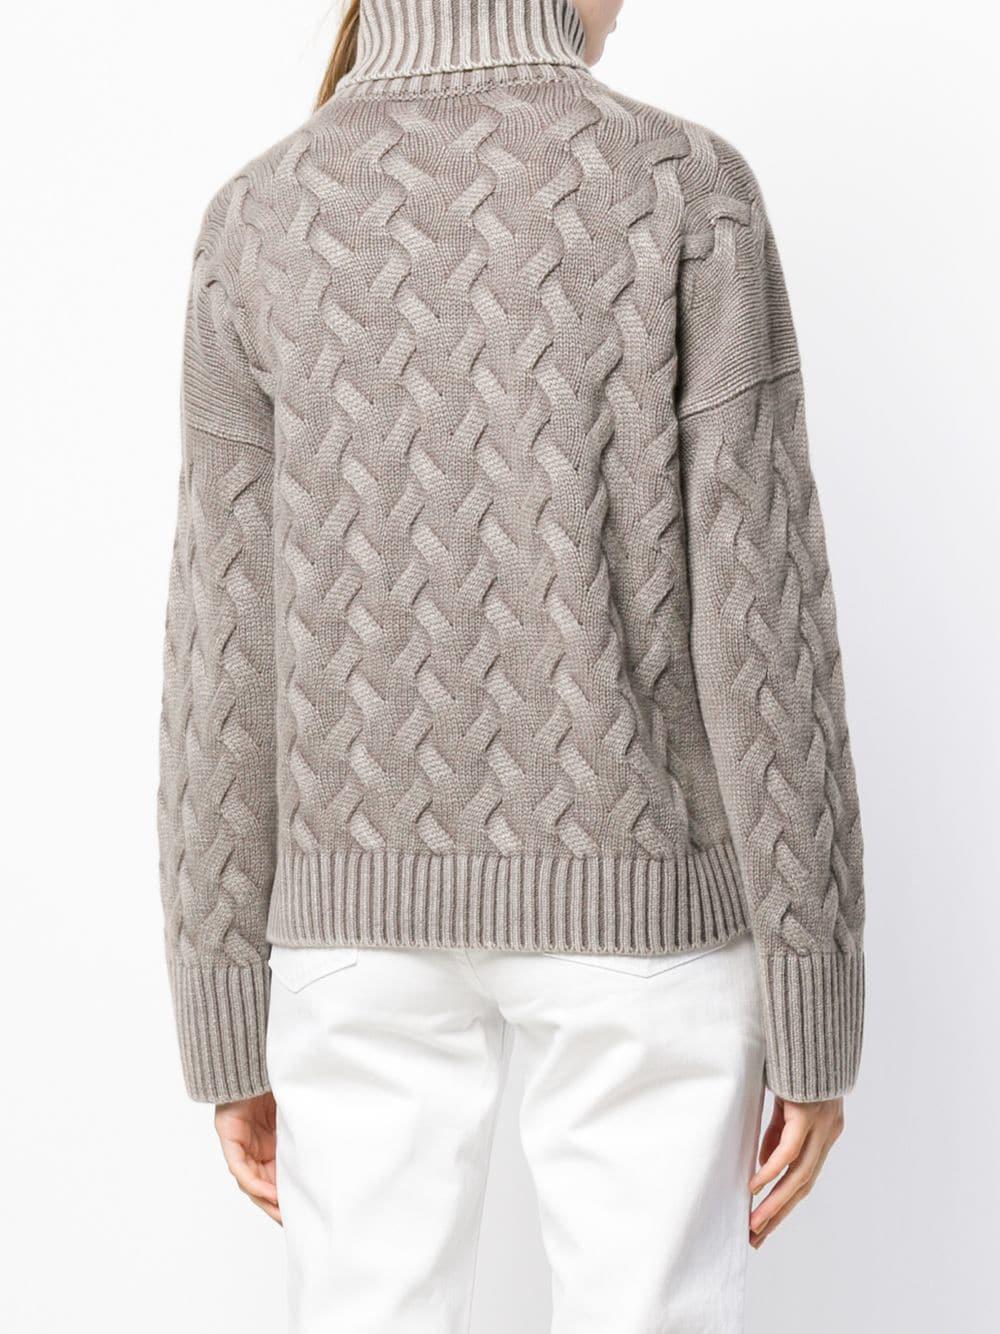 Iris Von Arnim Cashmere Aspen Sweater in Grey (Gray) - Lyst